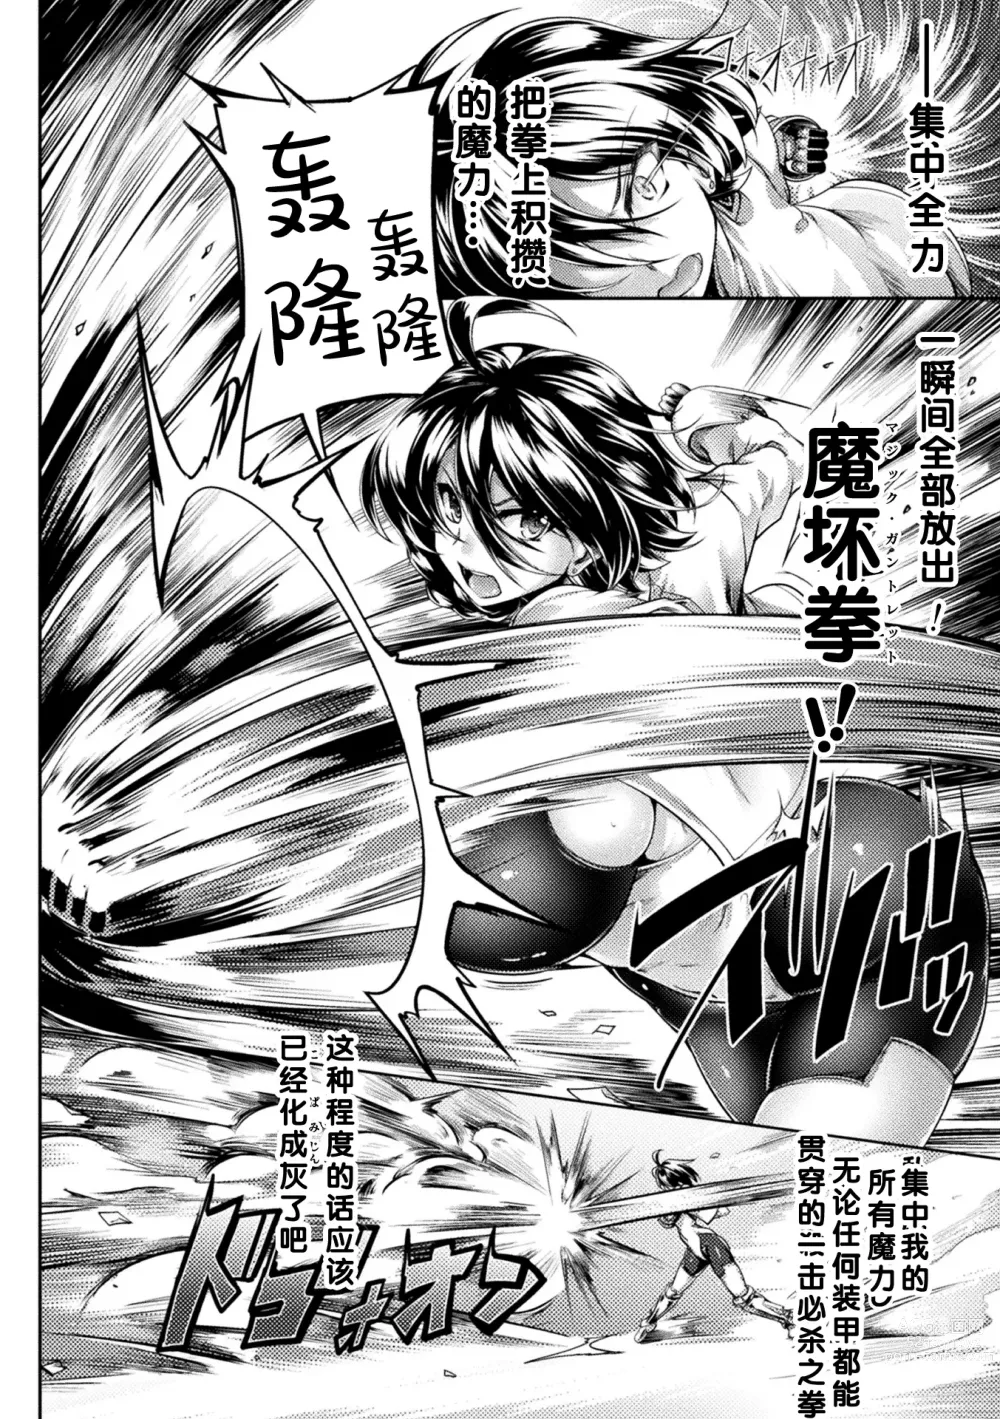 Page 2 of manga Kijoku Souki ~invasion soldier~